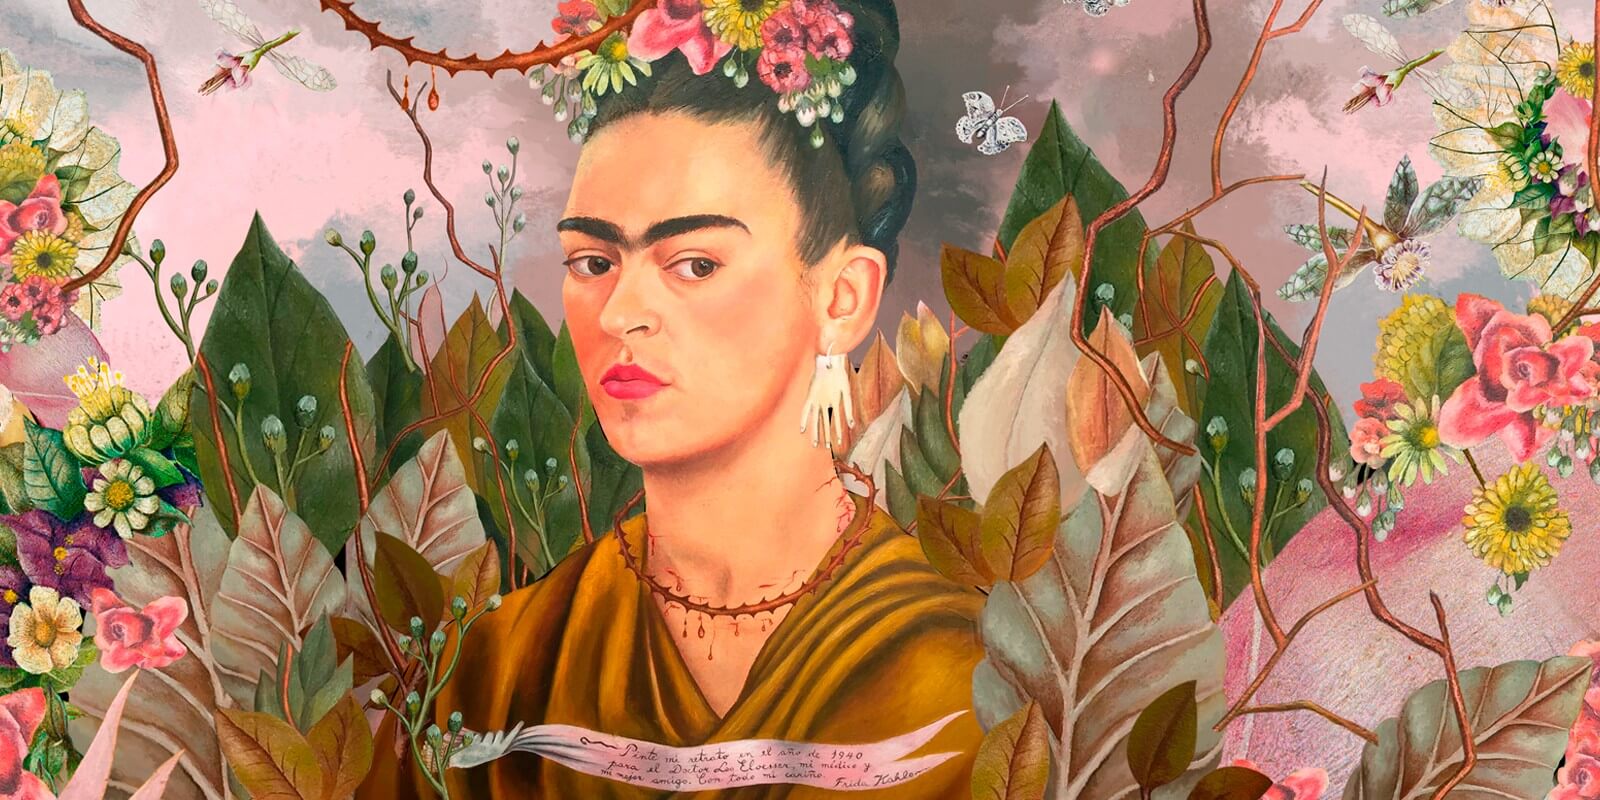 La pintora mexicana Frida Kahlo tendrá su bioserie